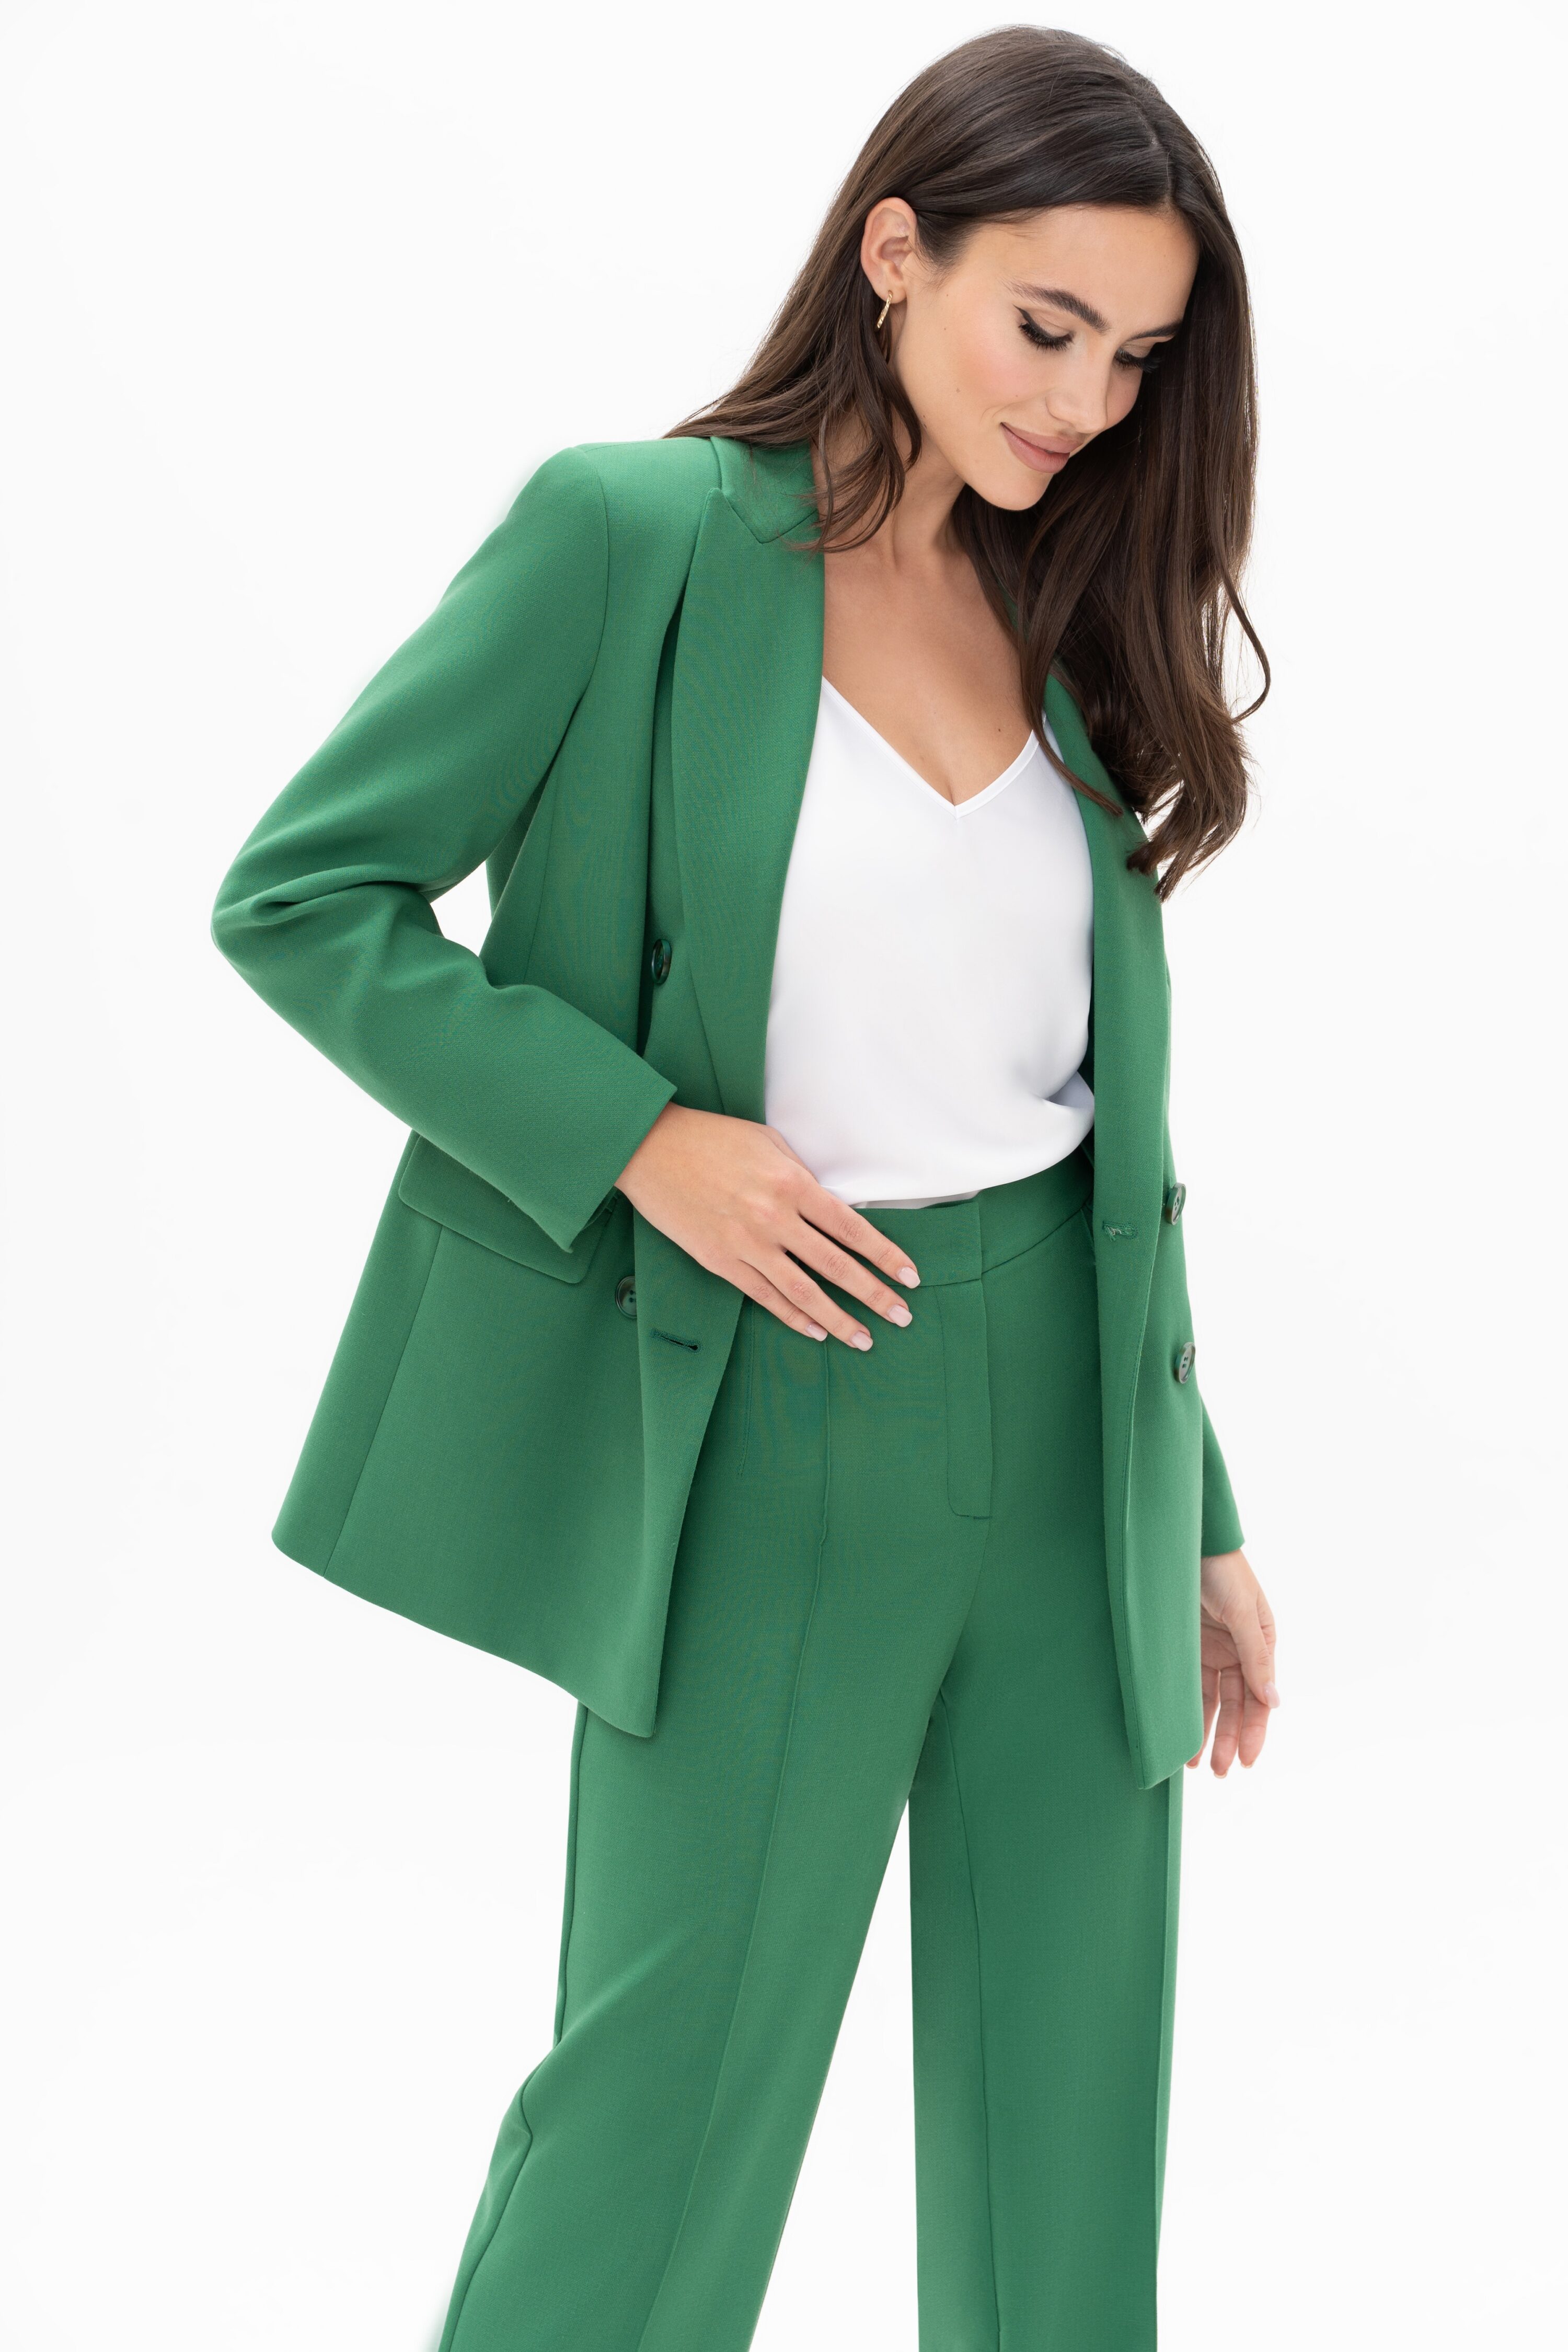 Купить костюм URS 22-965-3 зеленый женский брючный